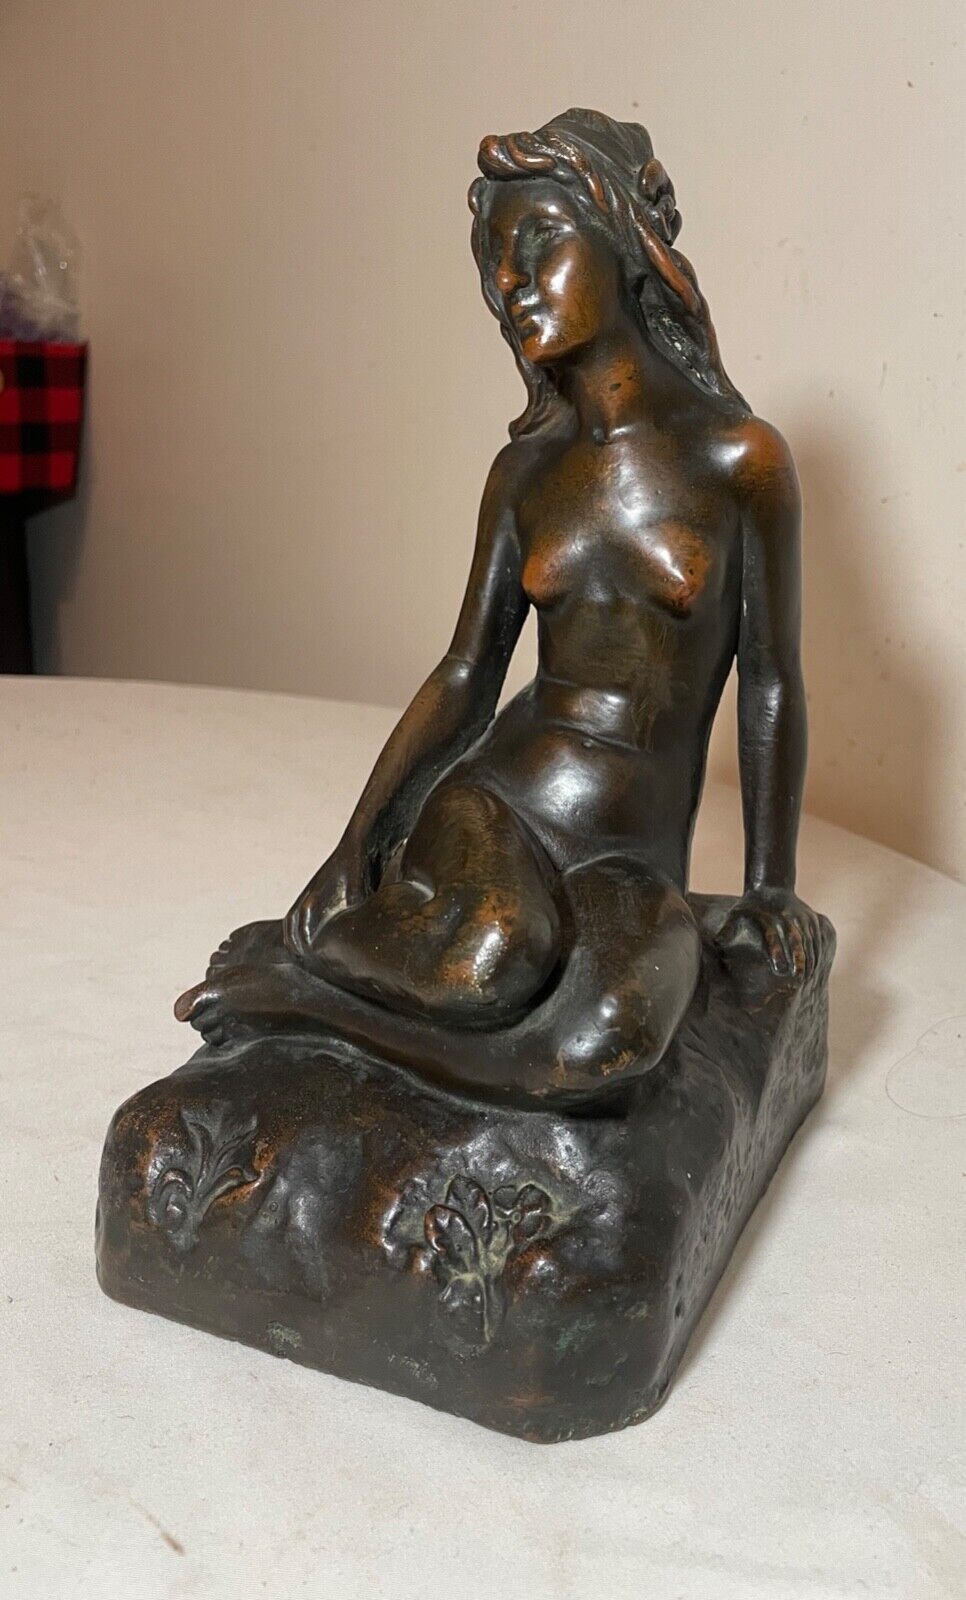 LARGE Antique KBW Kathodian Bronze Clad Nude Lady Bust Art Statue sculpture